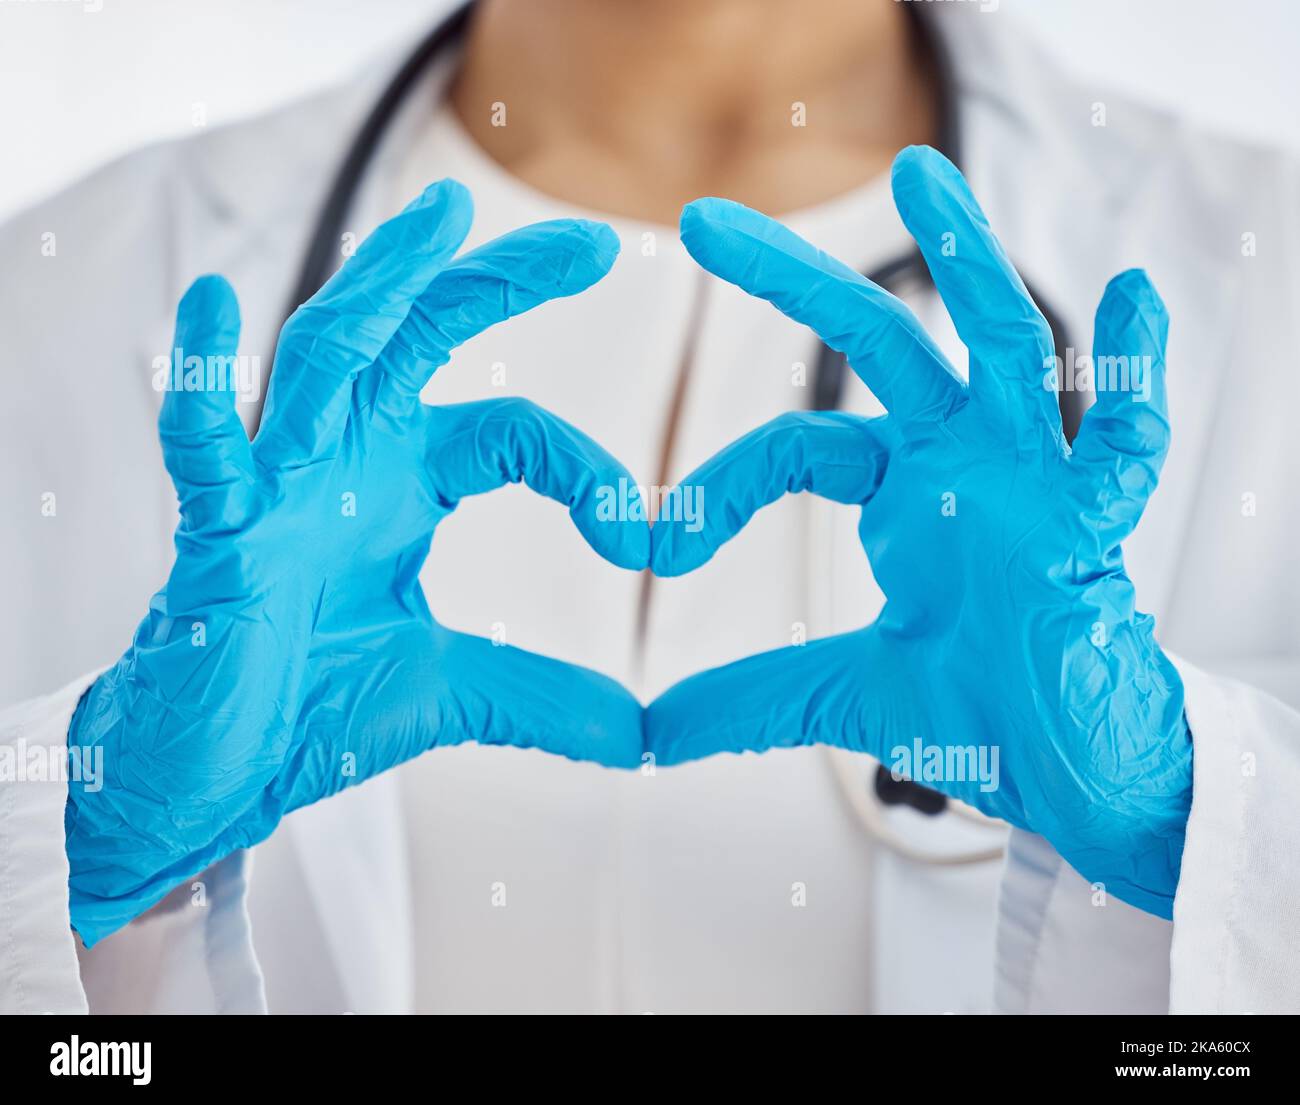 Herz, Arzt und Arzt mit Händen für Unterstützung, Liebe und Gesundheit während der Arbeit in einem Krankenhaus. Medizin, Pflege und Krankenschwester mit Handschuhen und Emoji-Zeichen Stockfoto